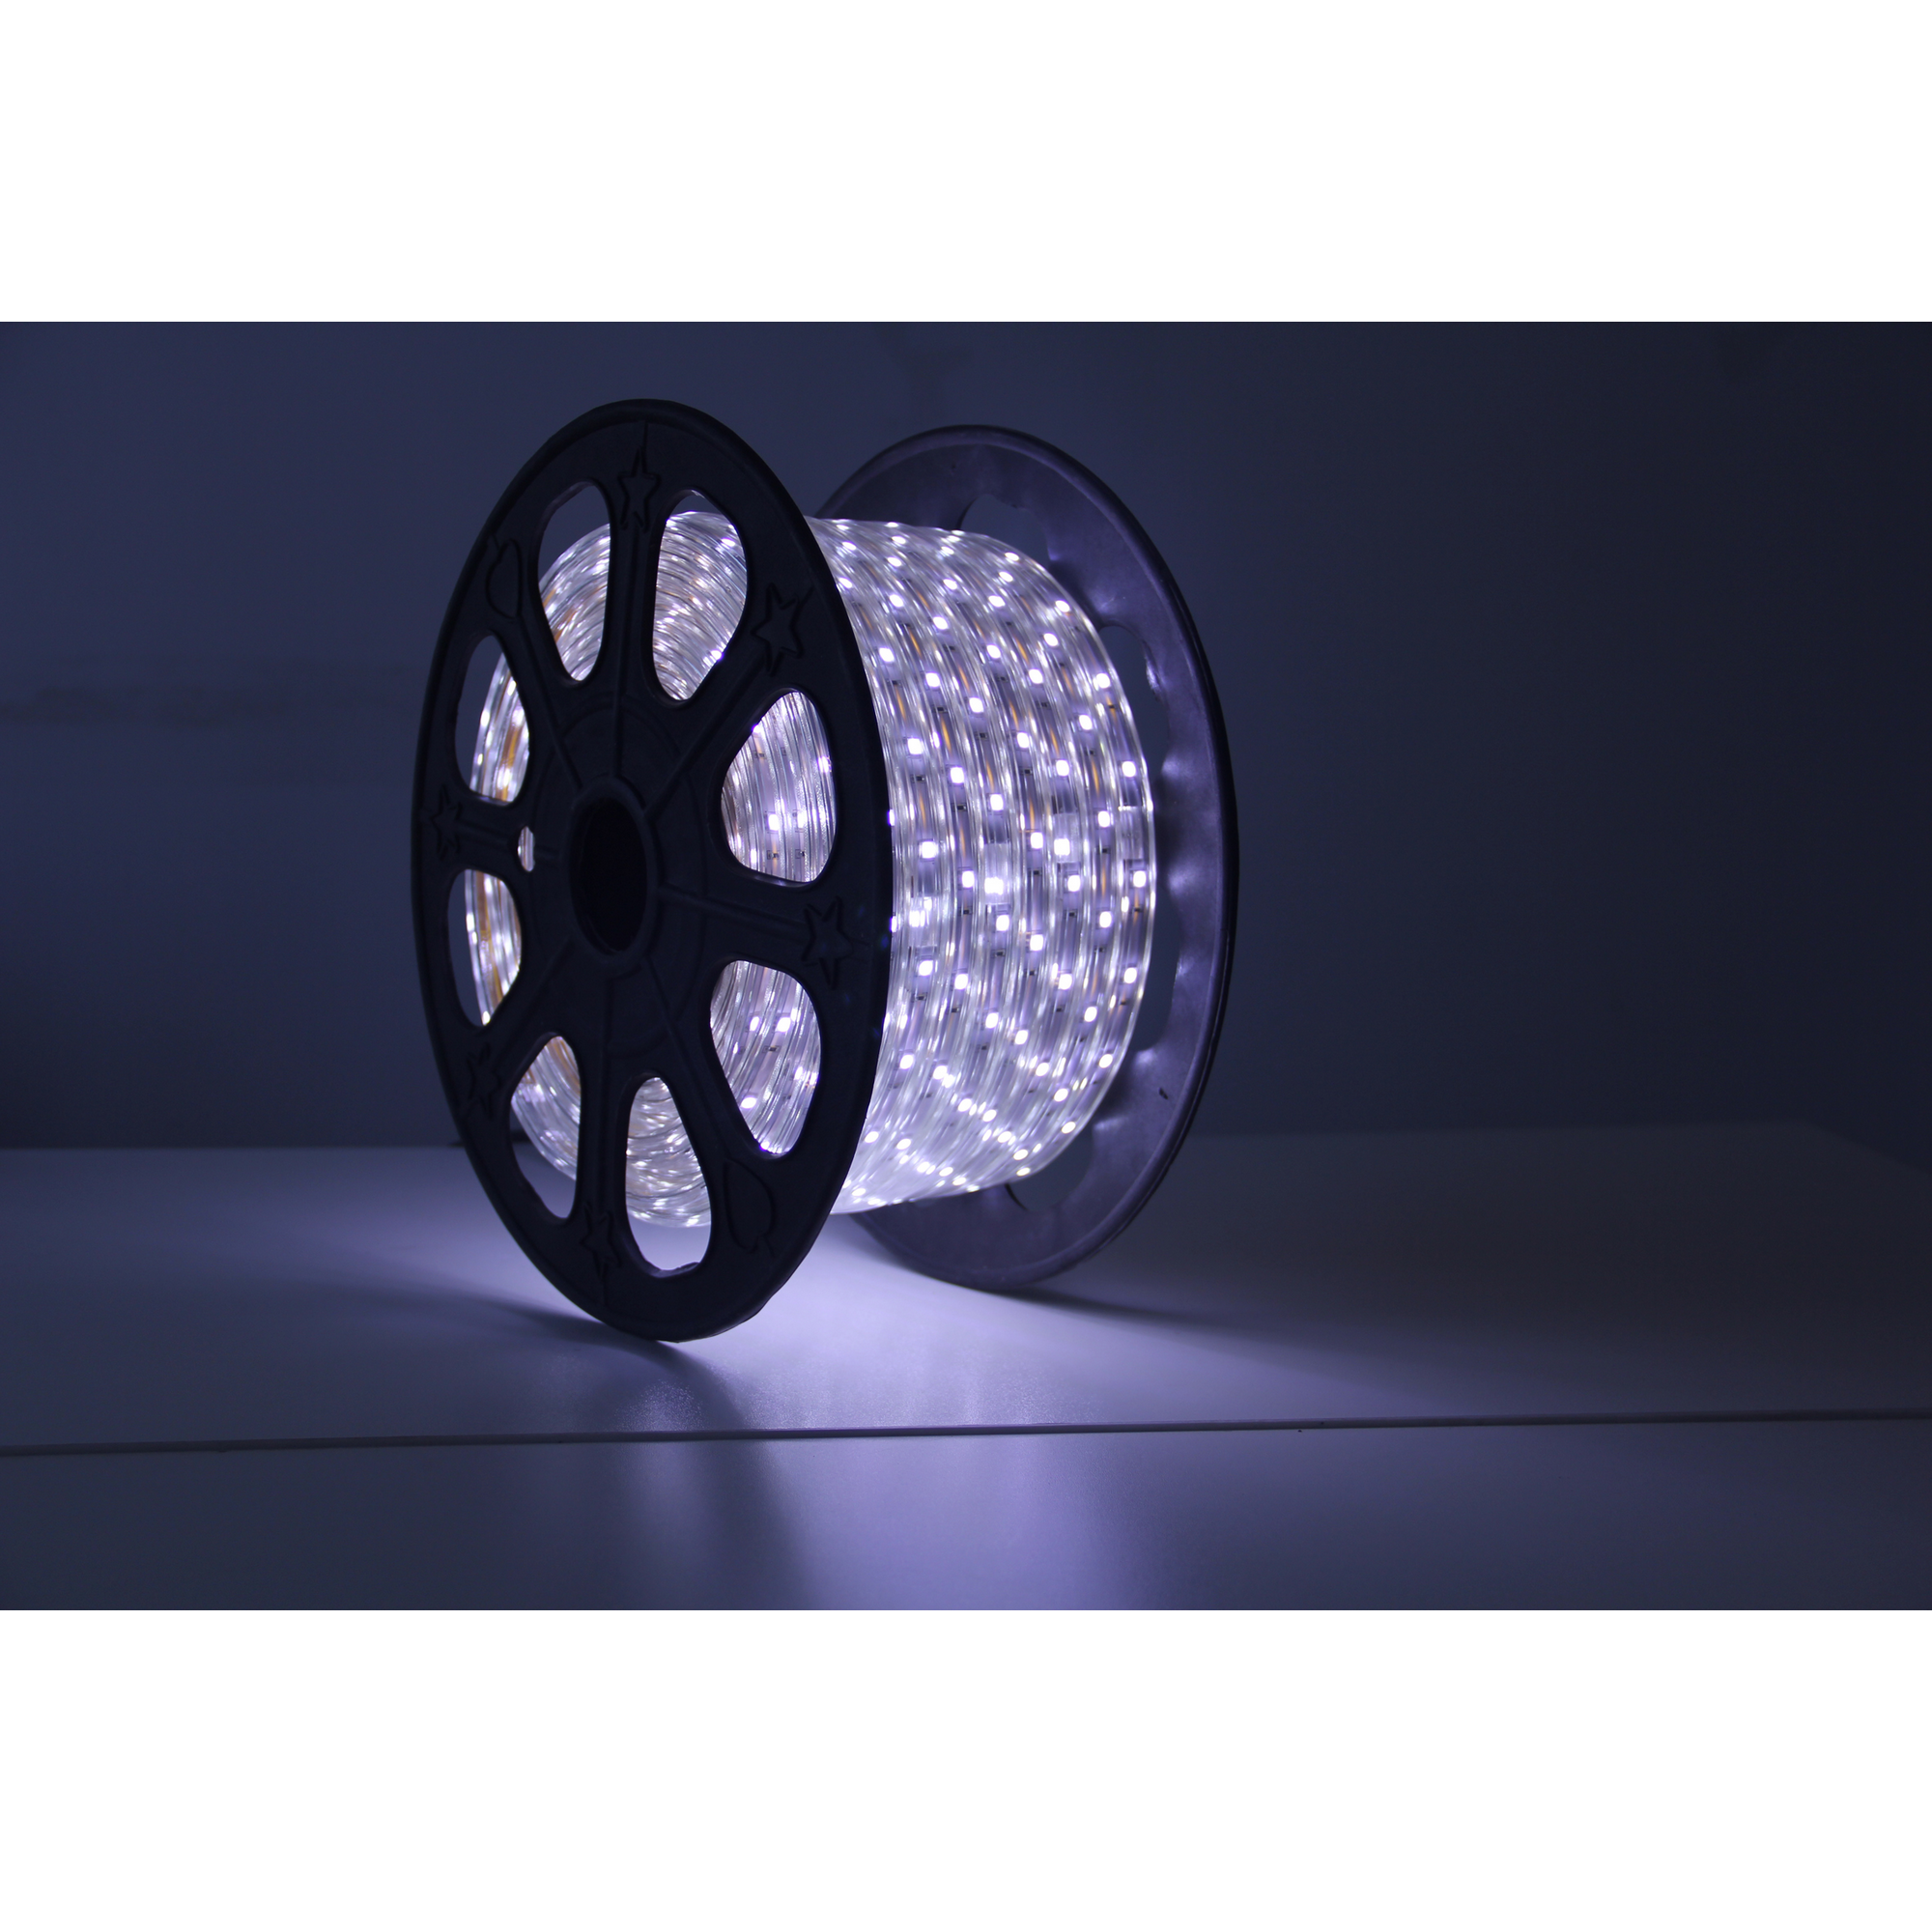 LED-Lichtschlauch 'Lius' kaltweiß 50 m + product picture